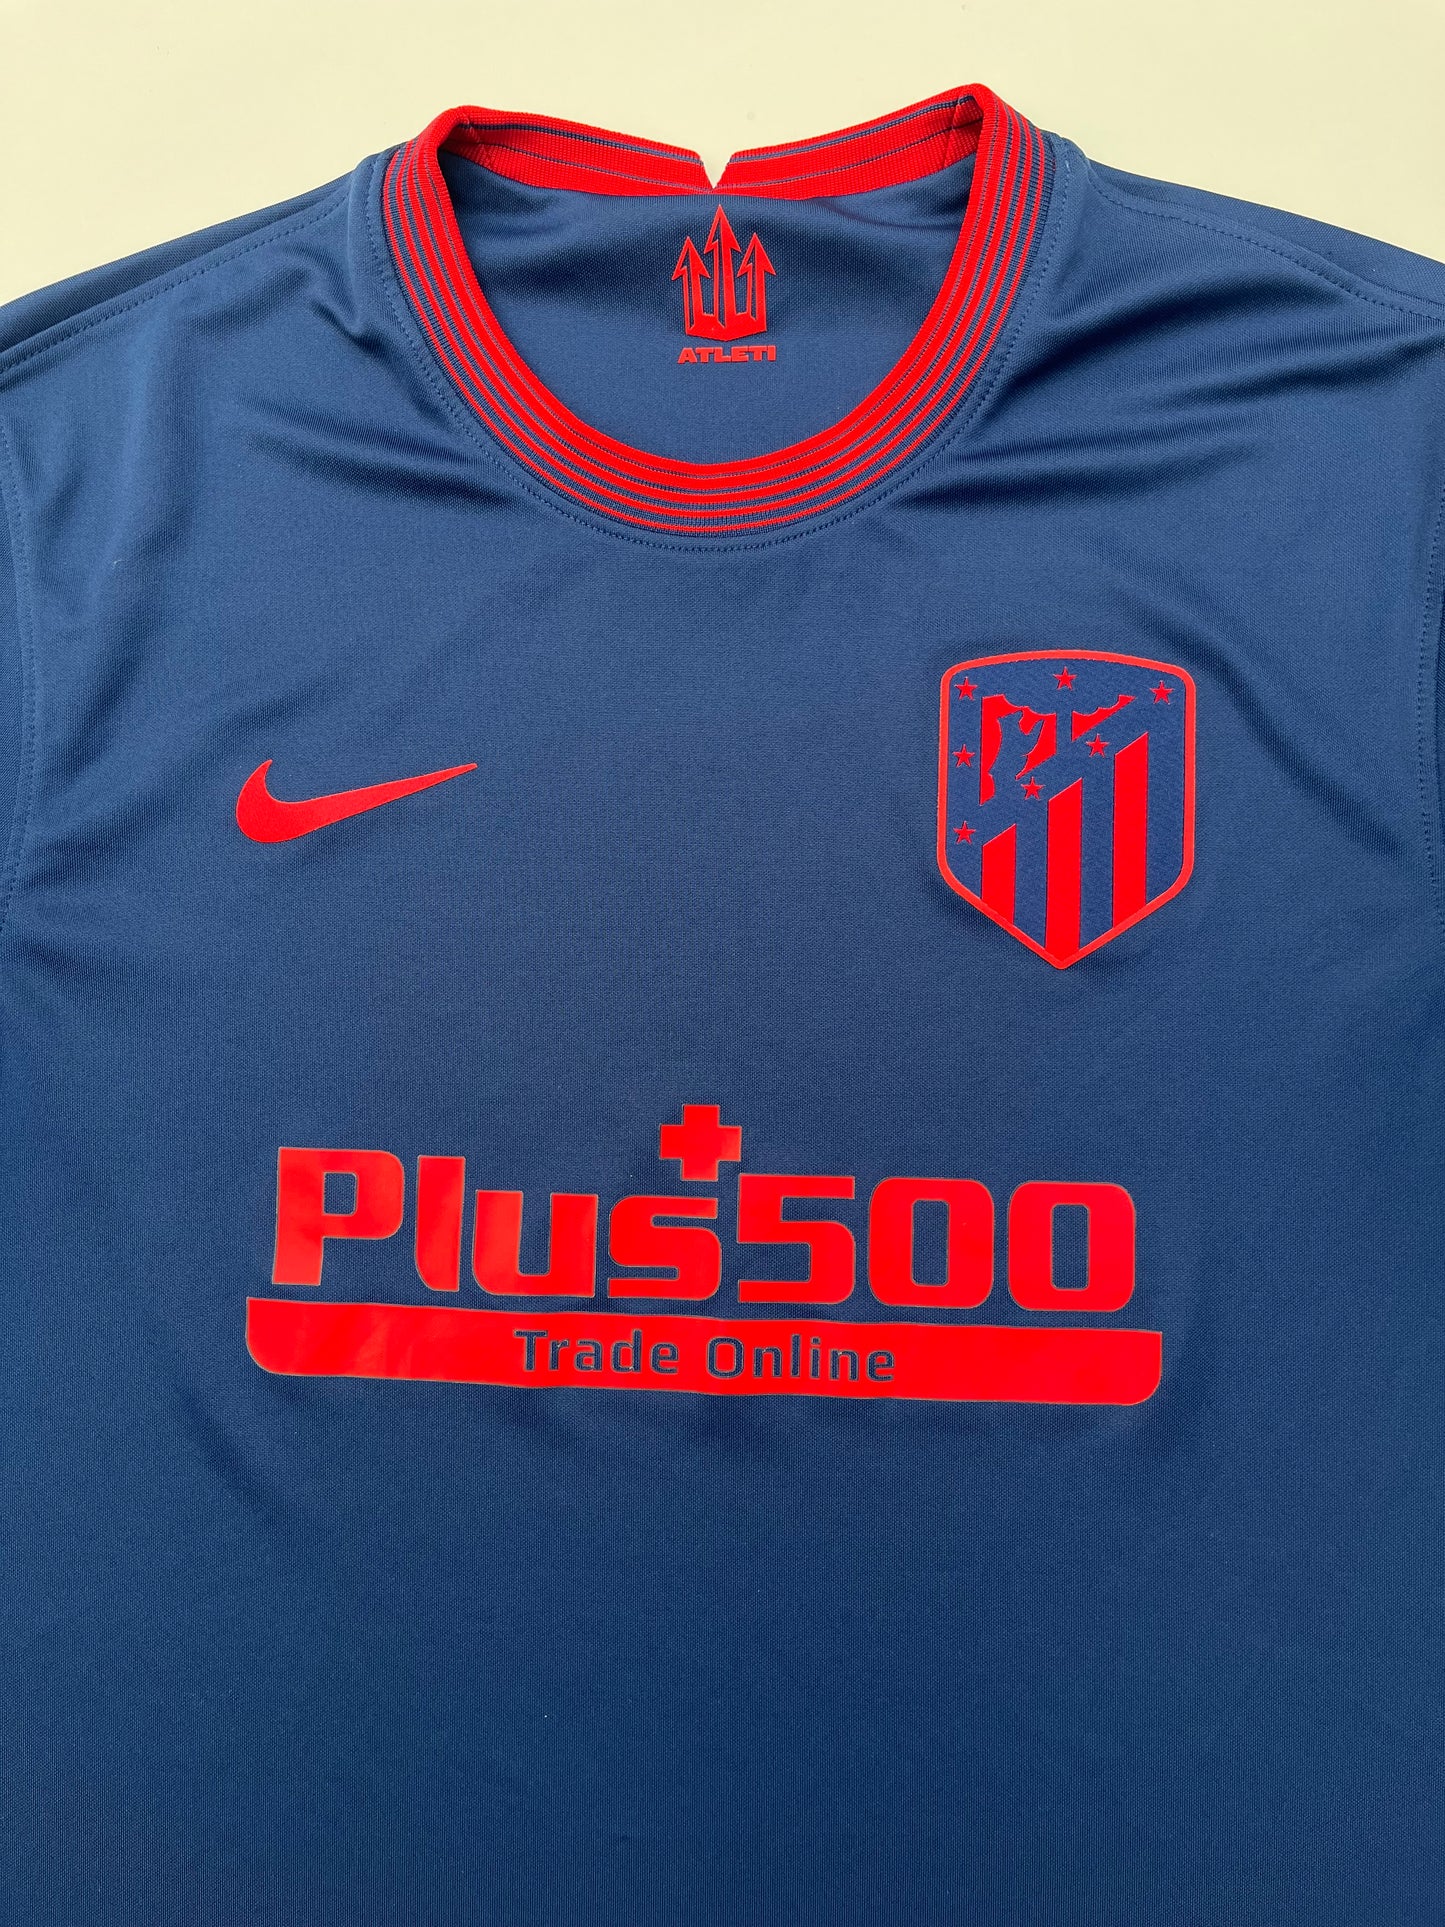 Jersey Atlético de Madrid Visita 2020 2021 (M)